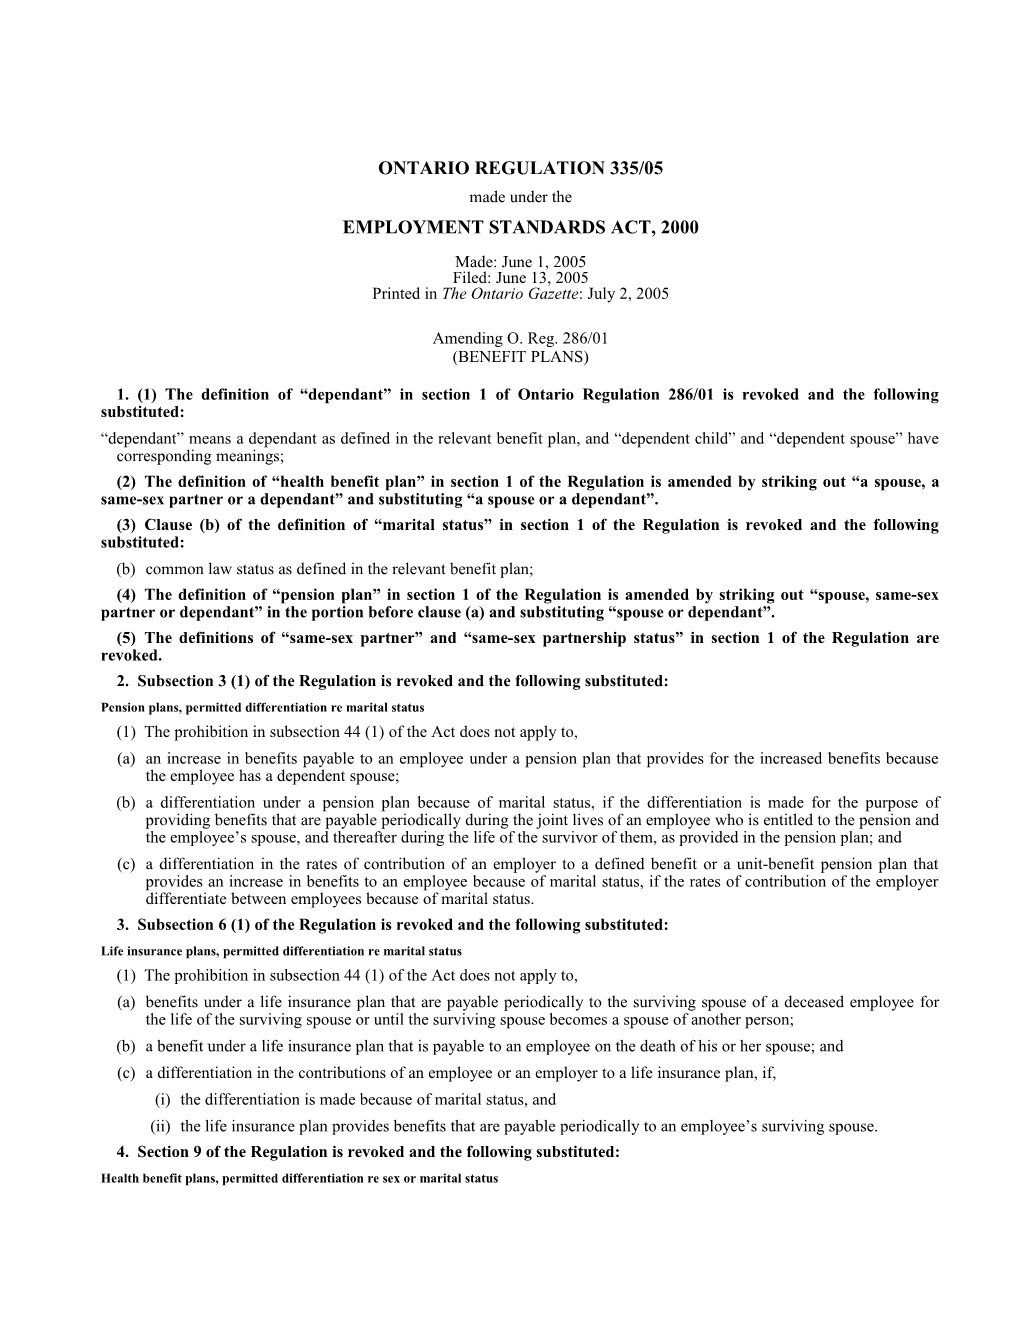 EMPLOYMENT STANDARDS ACT, 2000 - O. Reg. 335/05